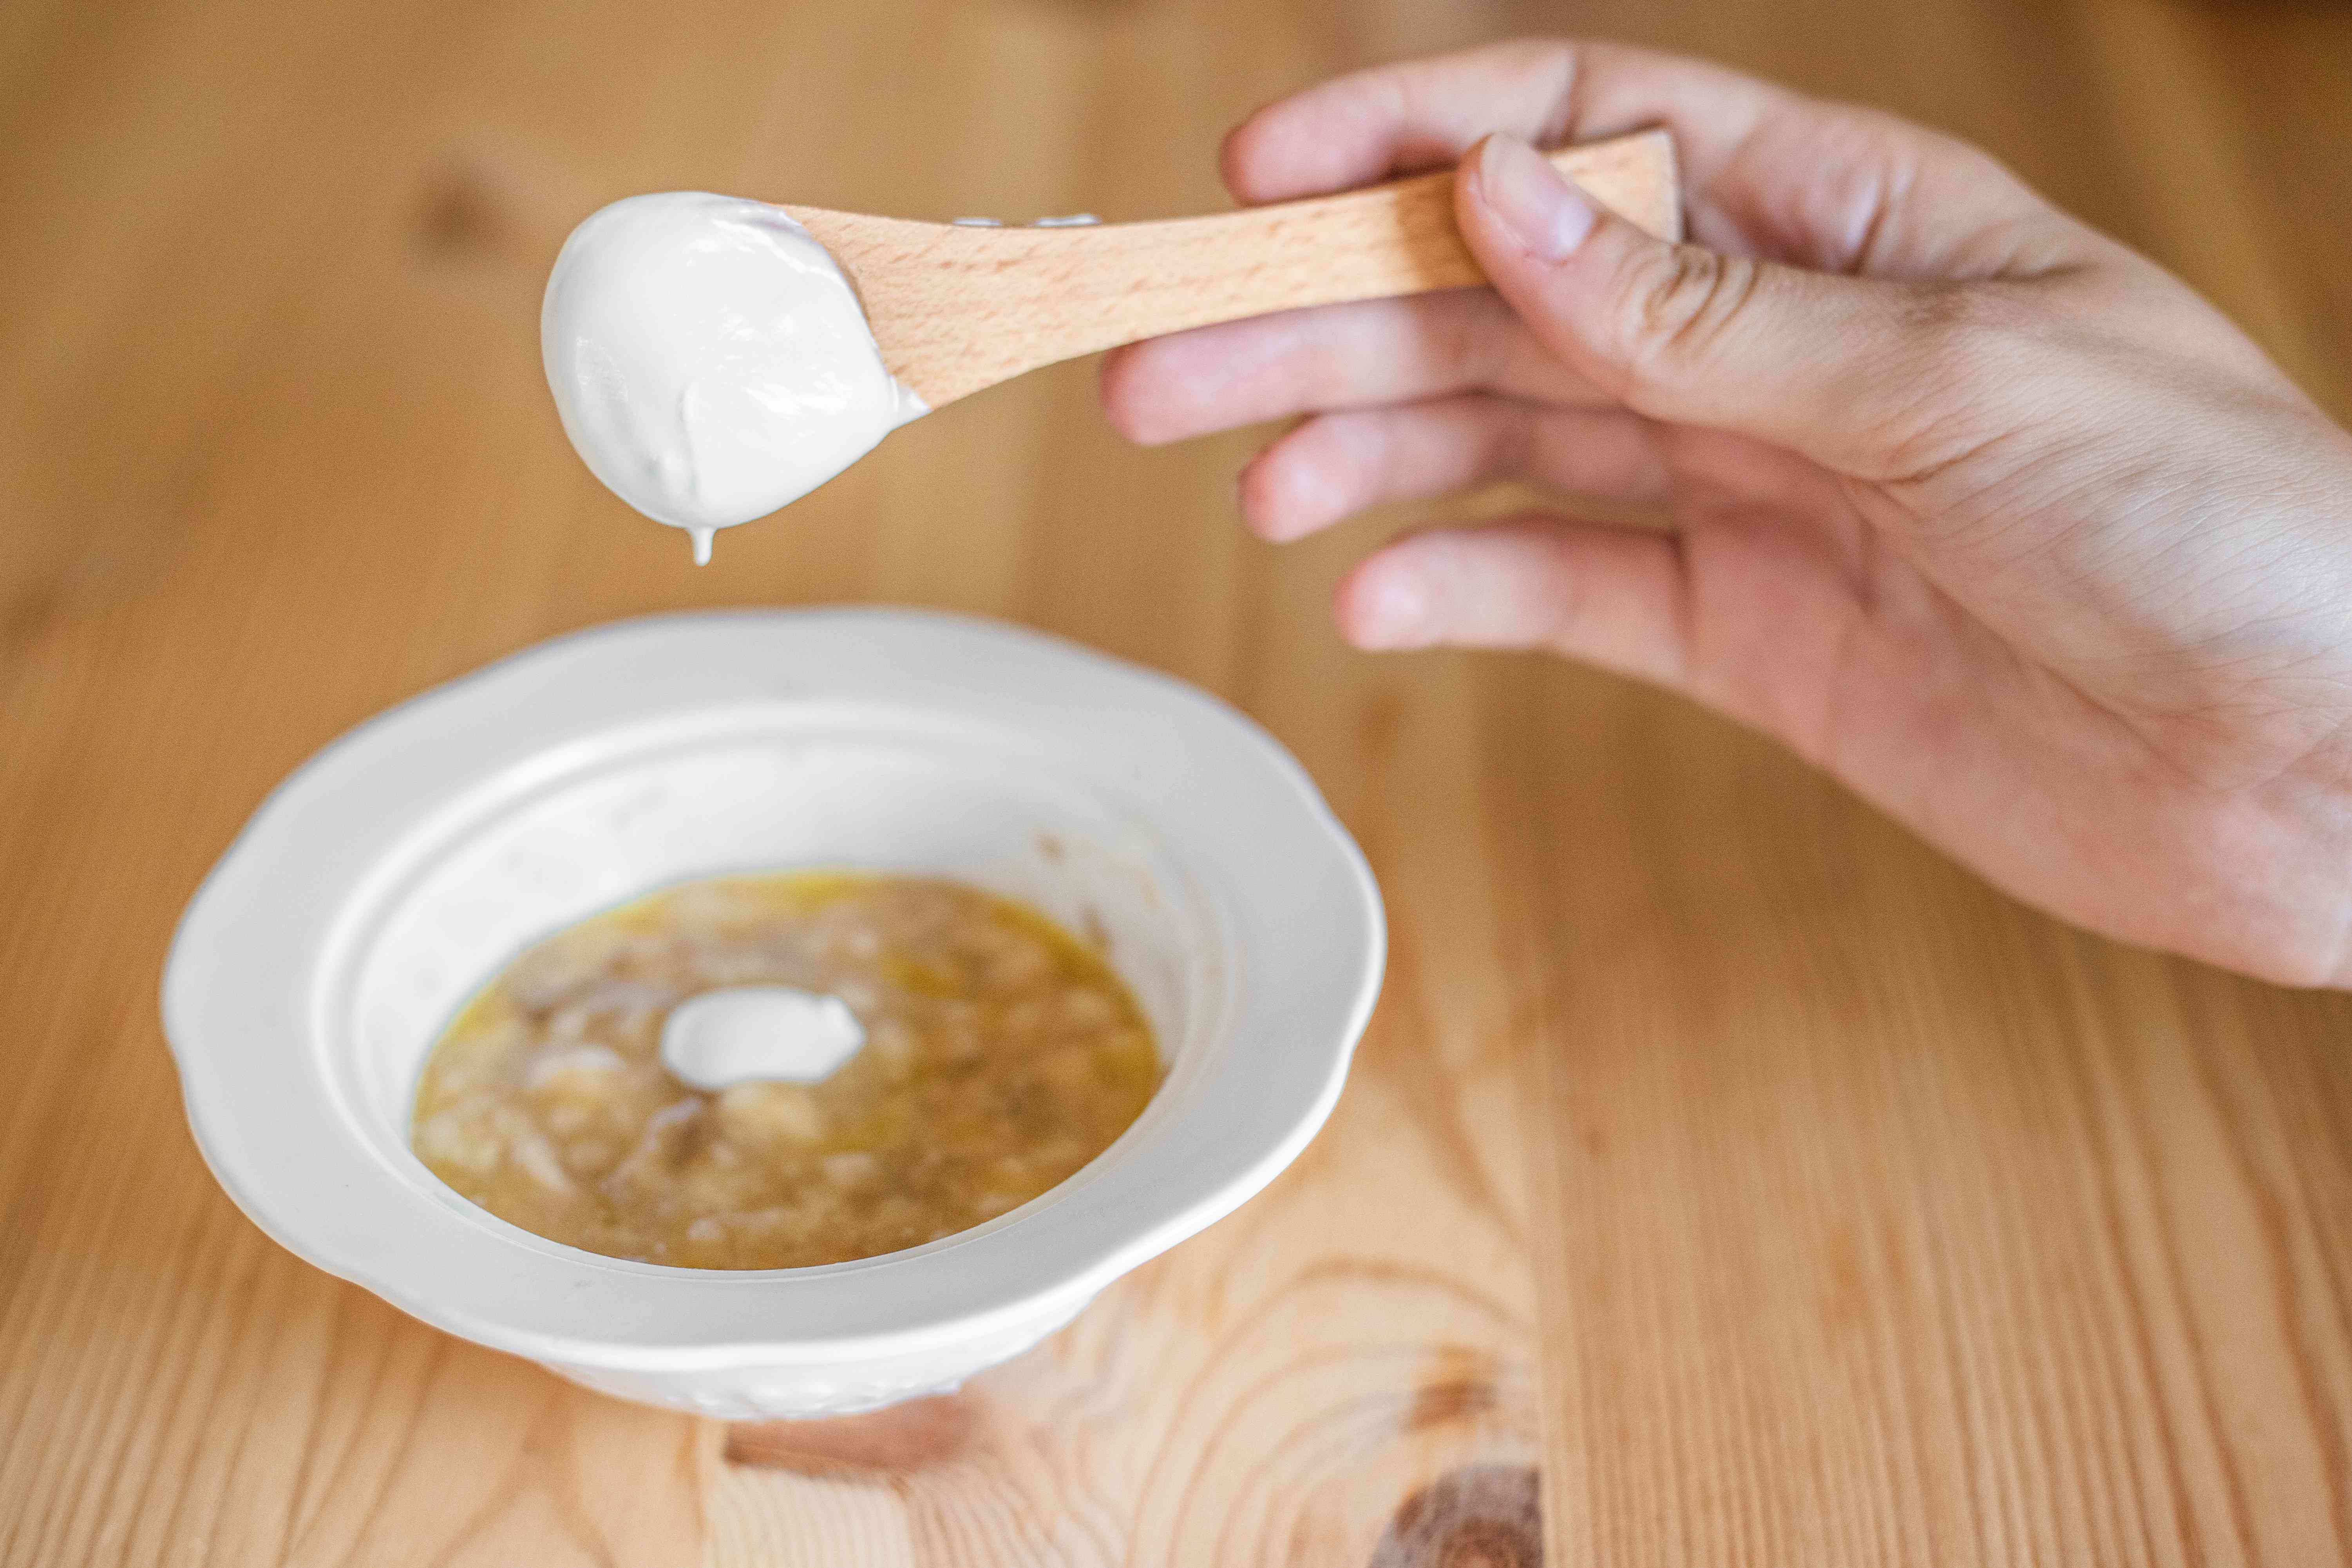 用木勺将浓稠的酸奶加入香蕉泥发膜中